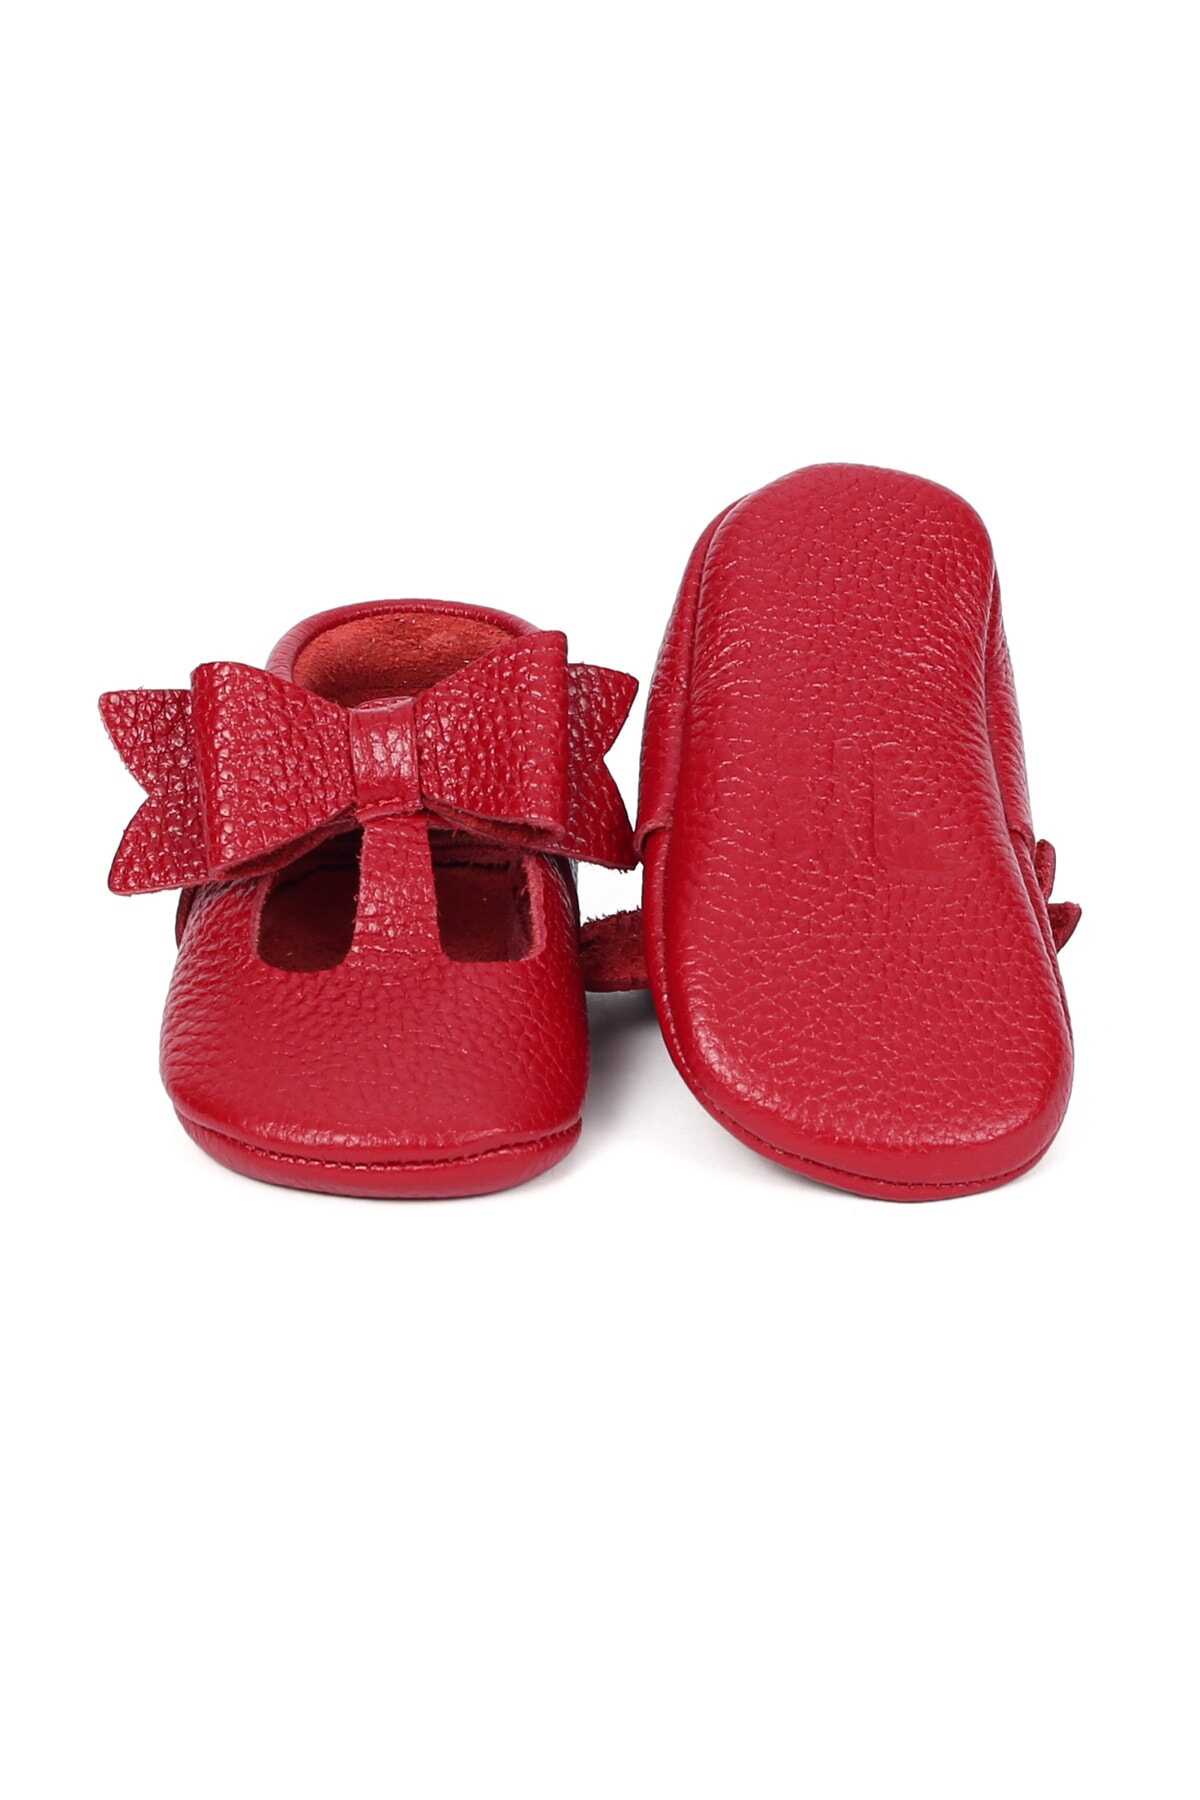 کفش رو فرشی پاپیون دار بچه گانه دخترانه قرمز برند YoYo Junior